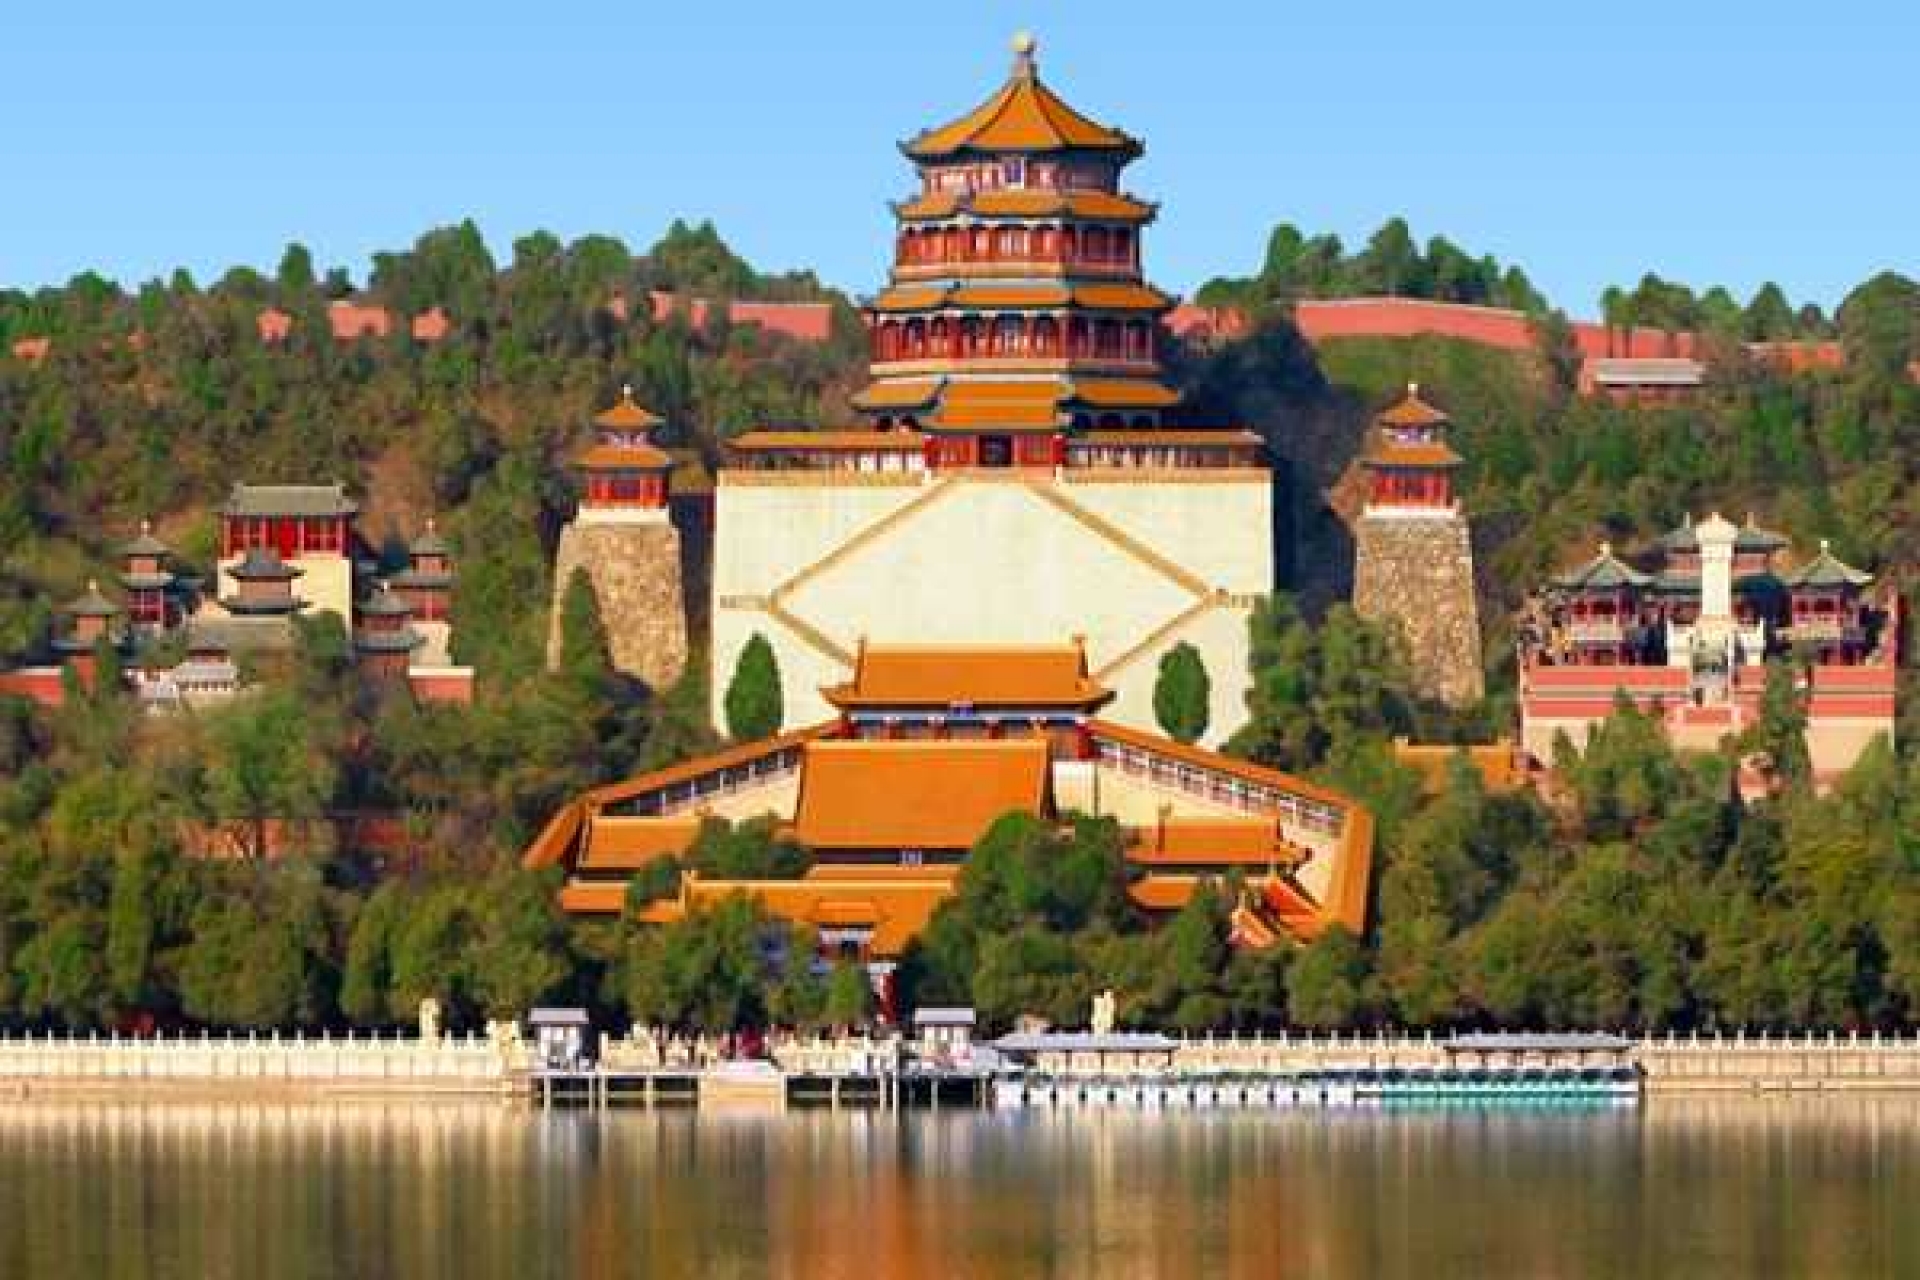 Ảnh du lịch Trung Quốc: Đi du lịch Trung Quốc là cơ hội để bạn có thể khám phá văn hóa và lịch sử đặc sắc của đất nước này. Cùng ngắm nhìn những ảnh du lịch Trung Quốc để cảm nhận sự phong phú và đa dạng về phong cảnh, món ăn, ngôn ngữ và nhiều thứ khác. Trung Quốc đang chờ đợi bạn đó!